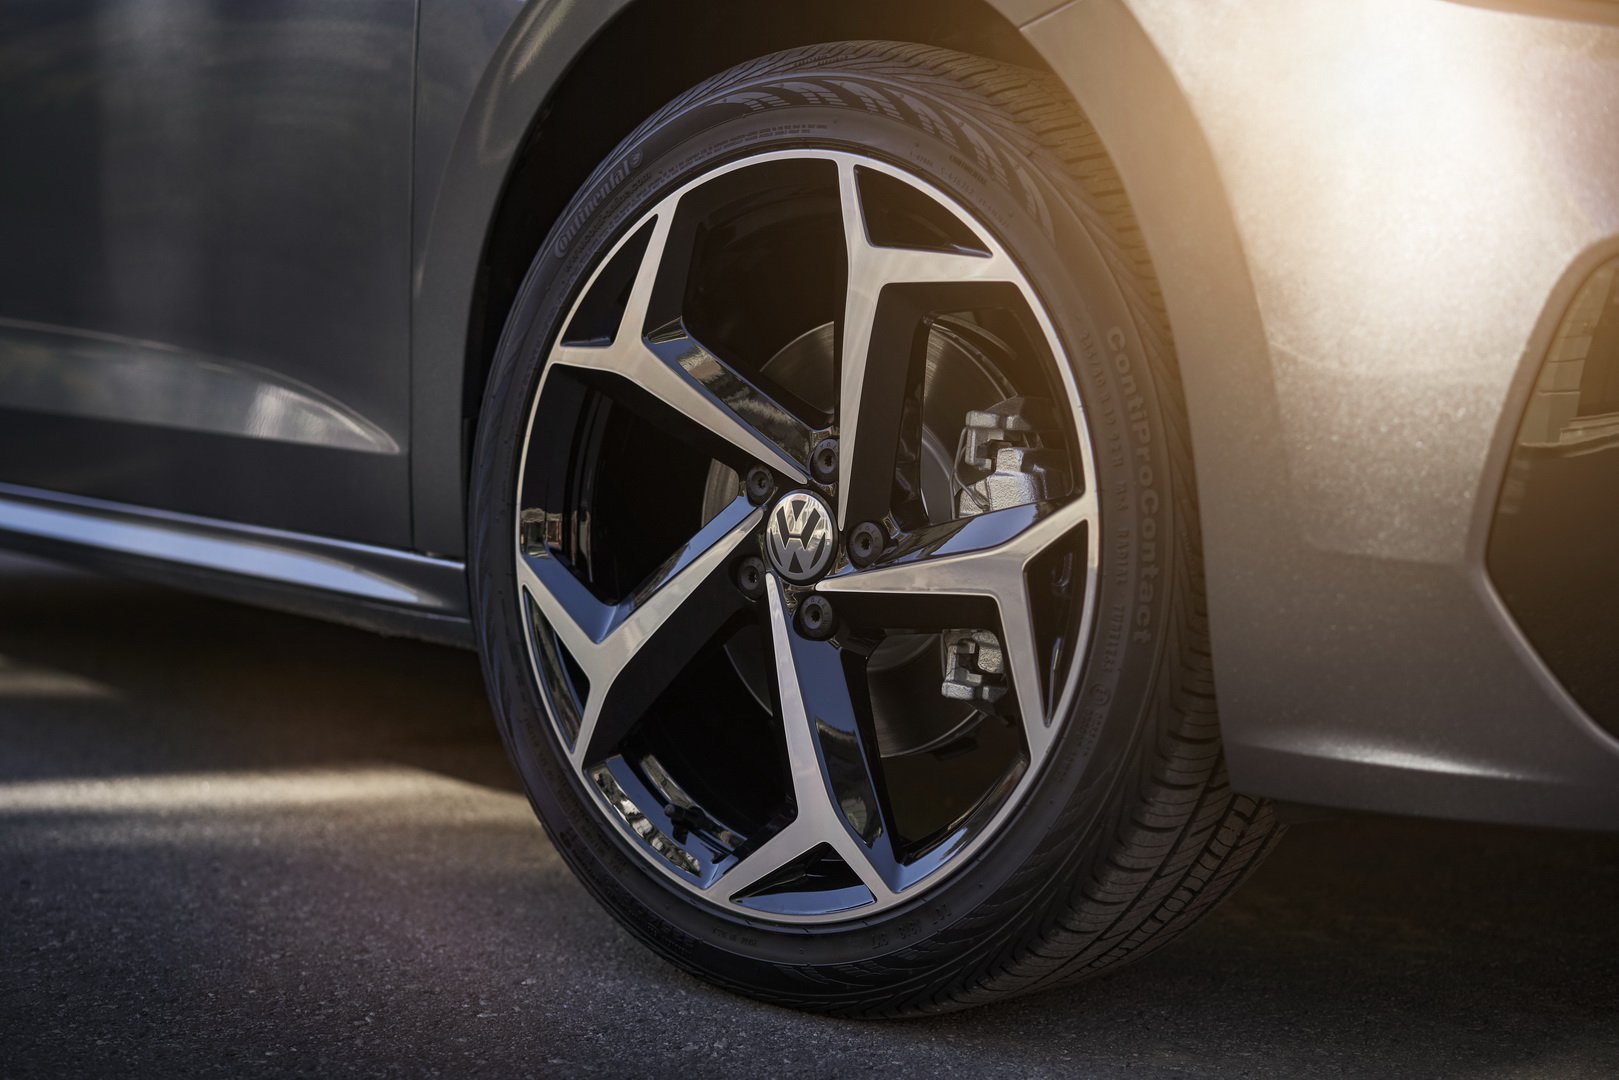 2019 Volkswagen Passat'ın ABD versiyonu görücüye çıktı: İşte tasarımı ve özellikleri